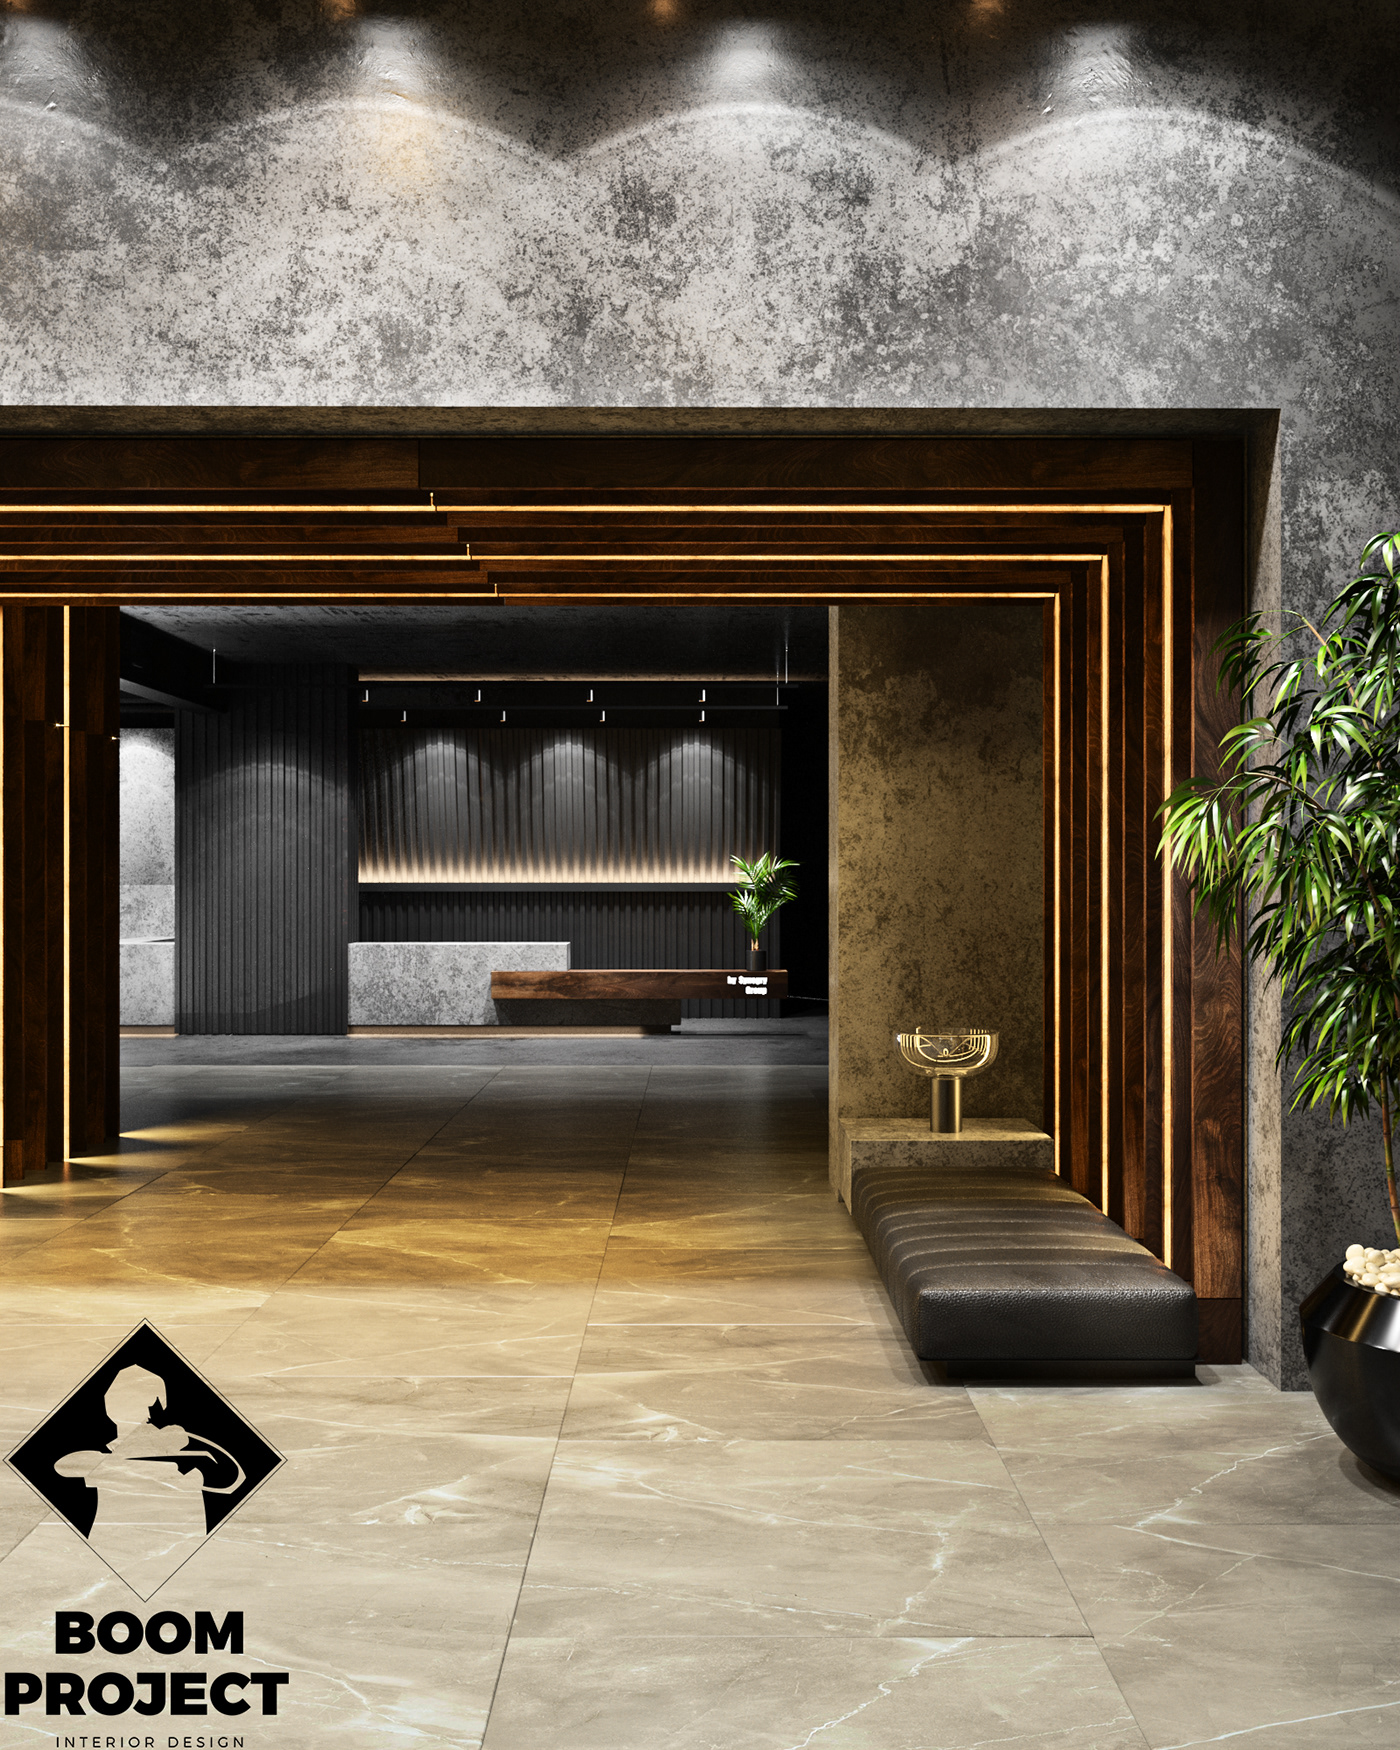 3dmax CoronaRender  design fitness interiordesign luxury Render sport